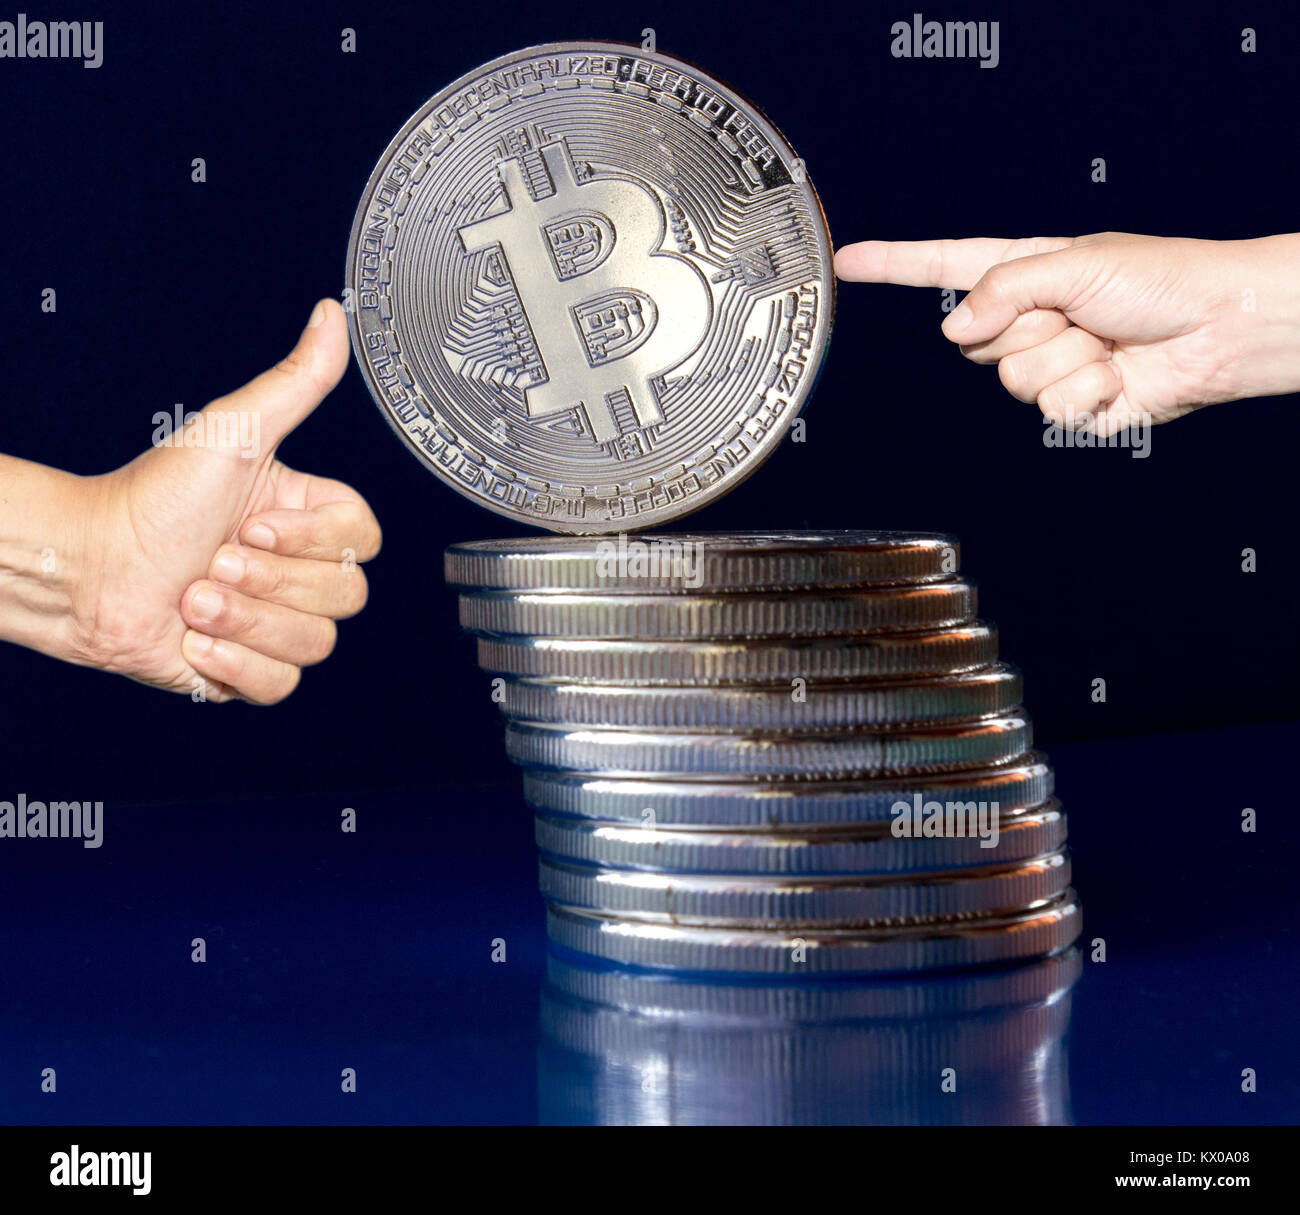 Auf einem blauen Hintergrund sind Silber Münzen eines digitalen crypto Währung Bitcoin. Zusätzlich zu den Münzen liegen, gibt es ständigen Bitcoin. Auf der einen Seite Pu Stockfoto